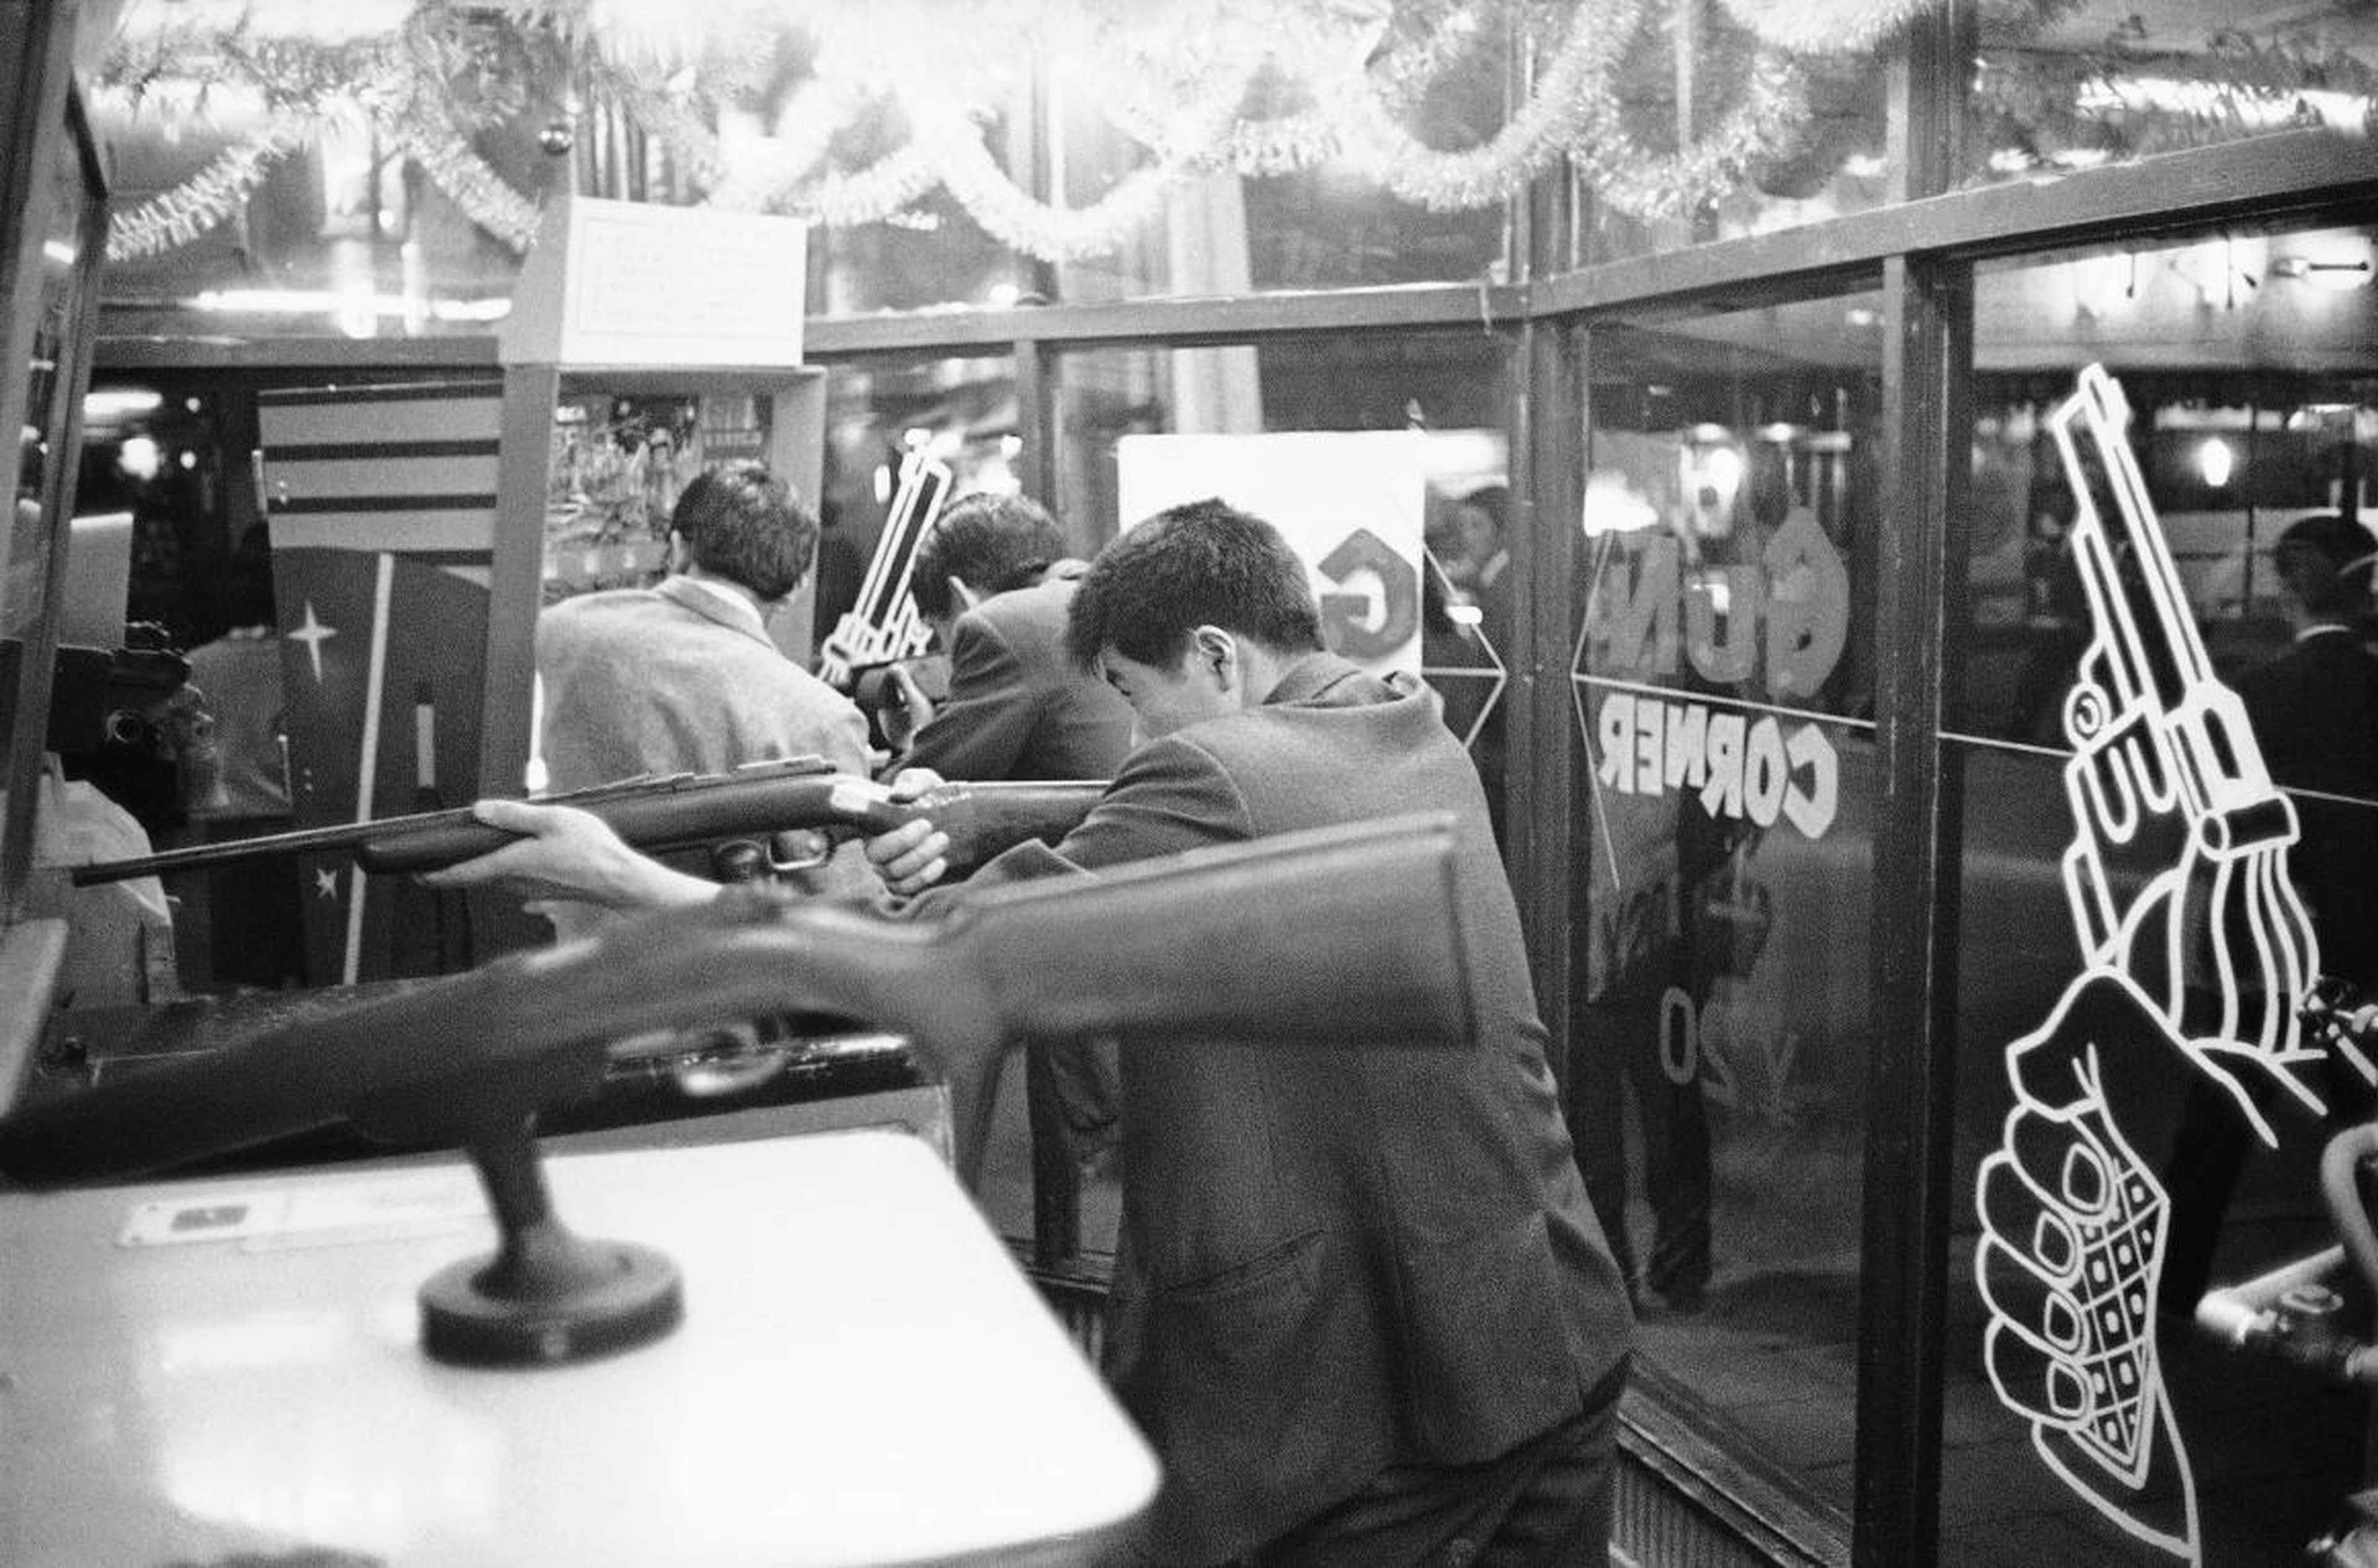 Los jóvenes japoneses apuestan por las máquinas de pinball y las pistolas de juguete de fabricación estadounidense en las numerosas galerías de tiro a lo largo de las calles de Tokio en mayo de 1964.